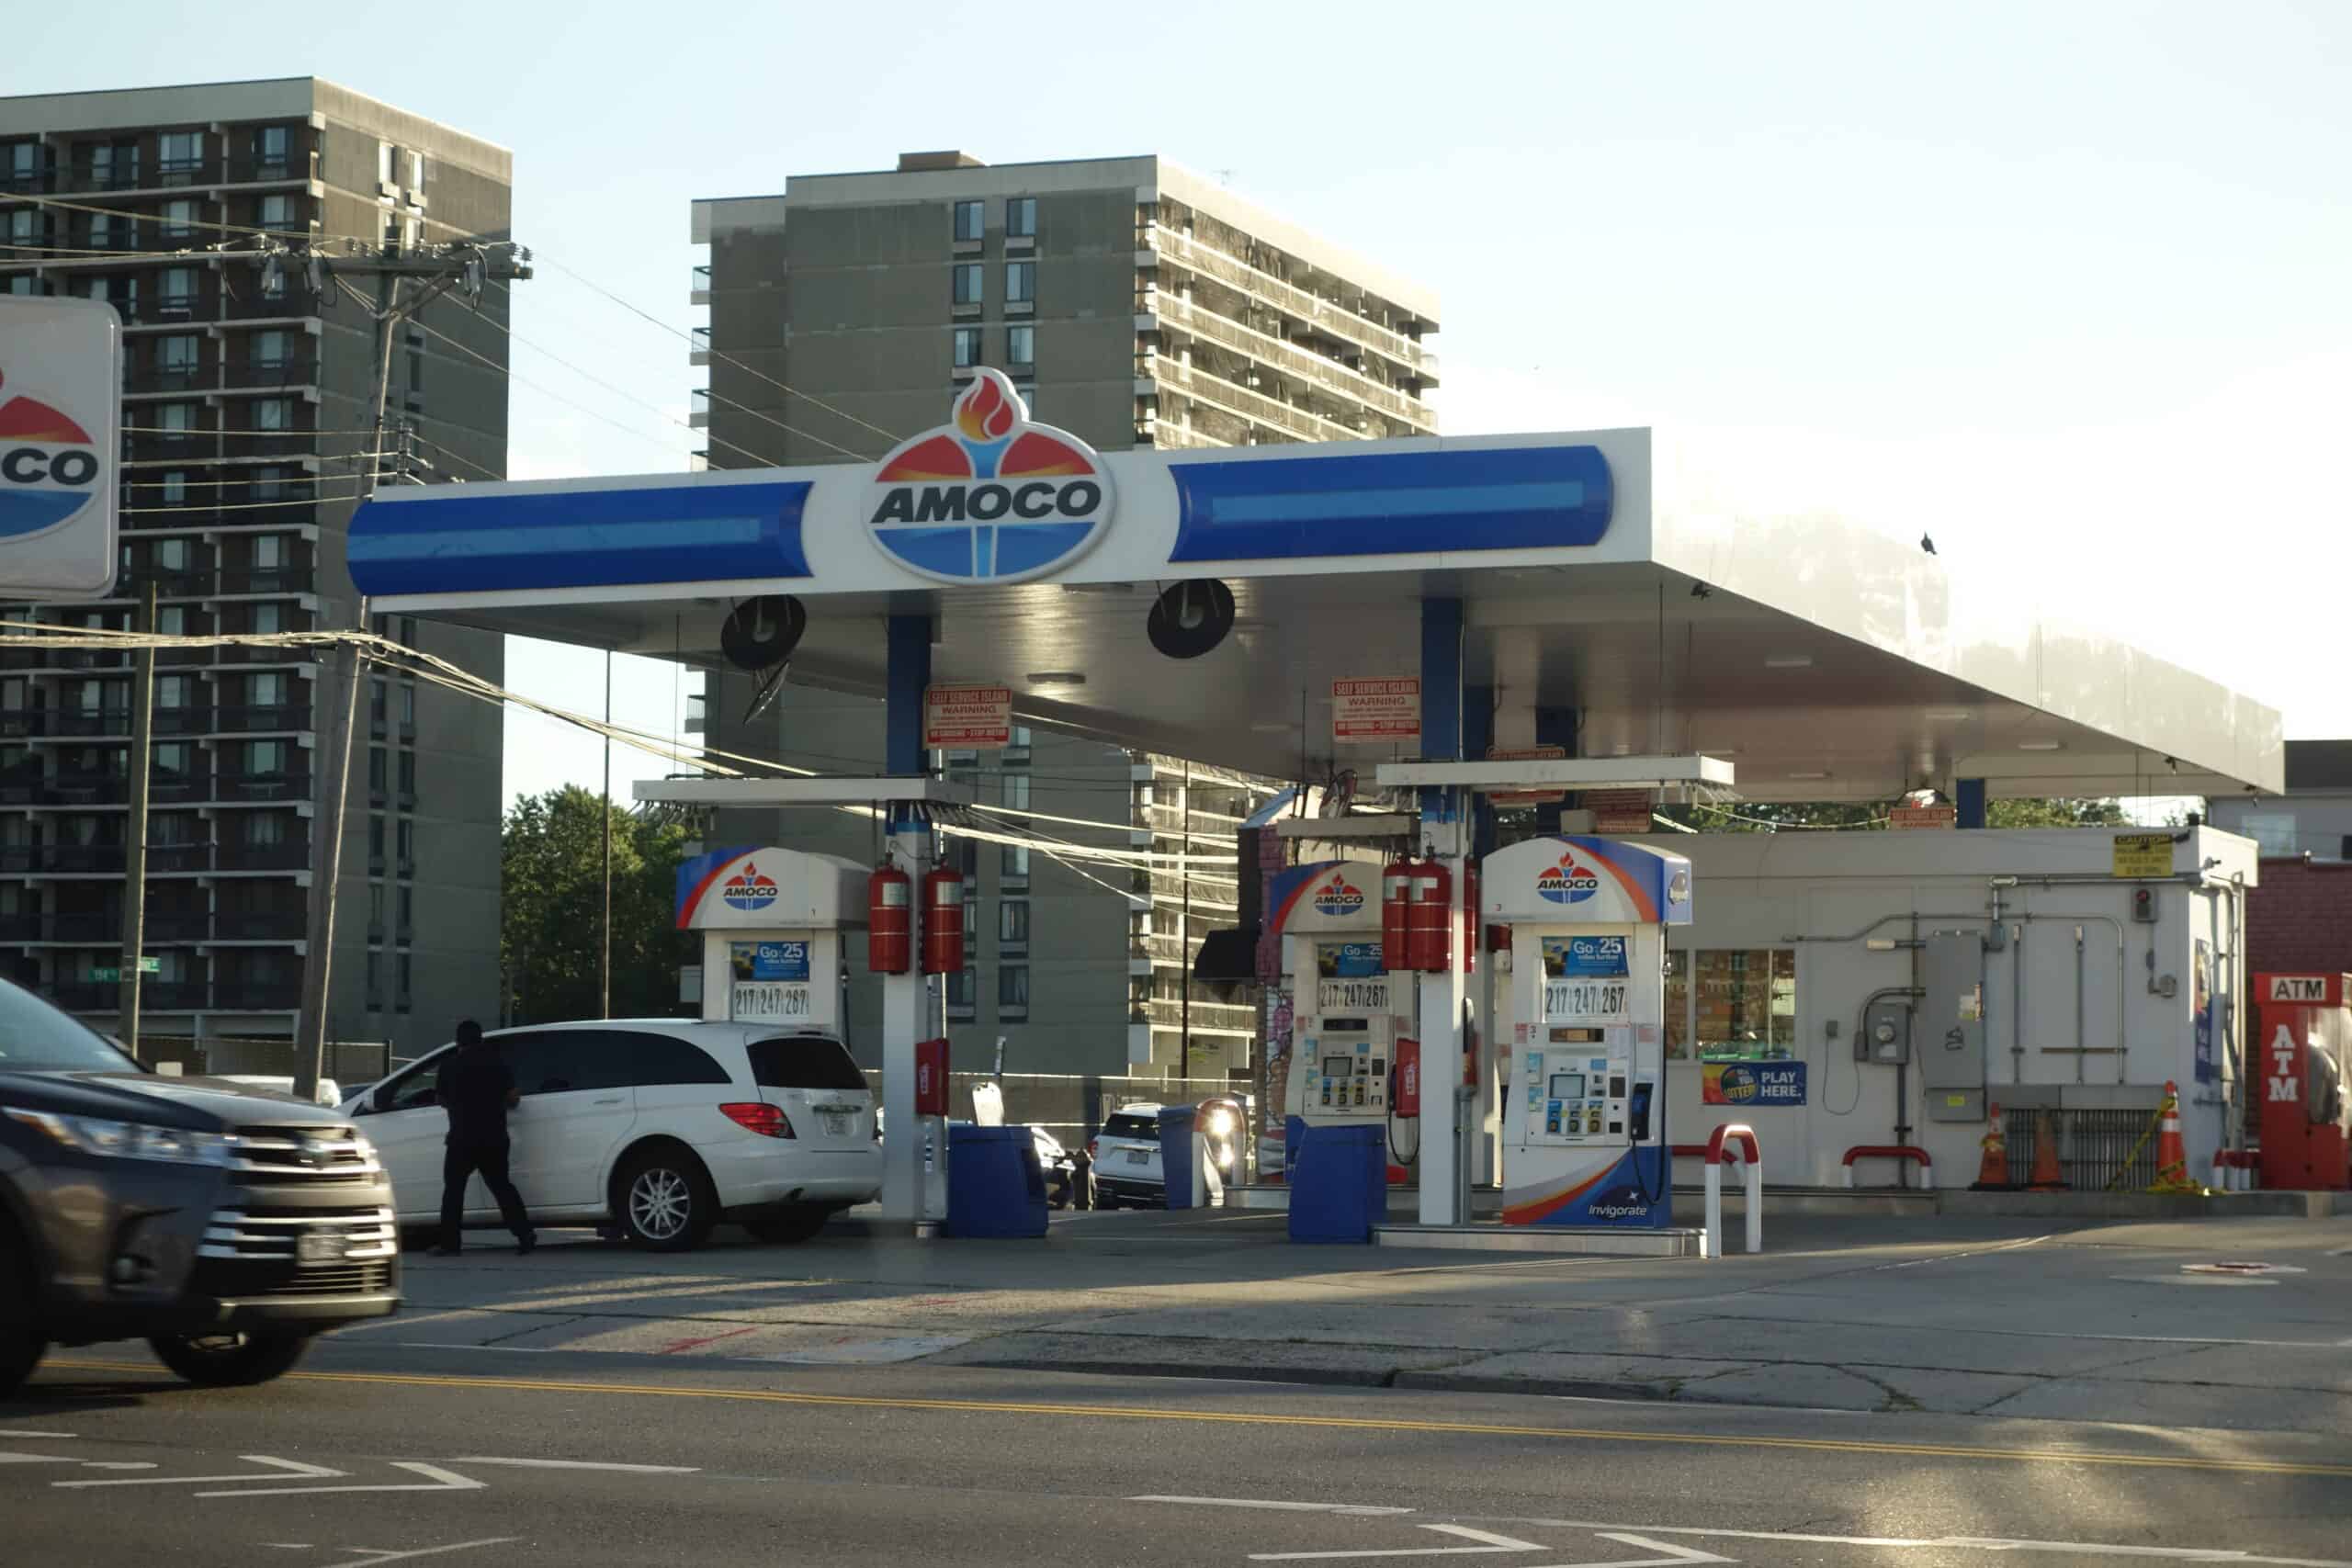 Amoco gas station